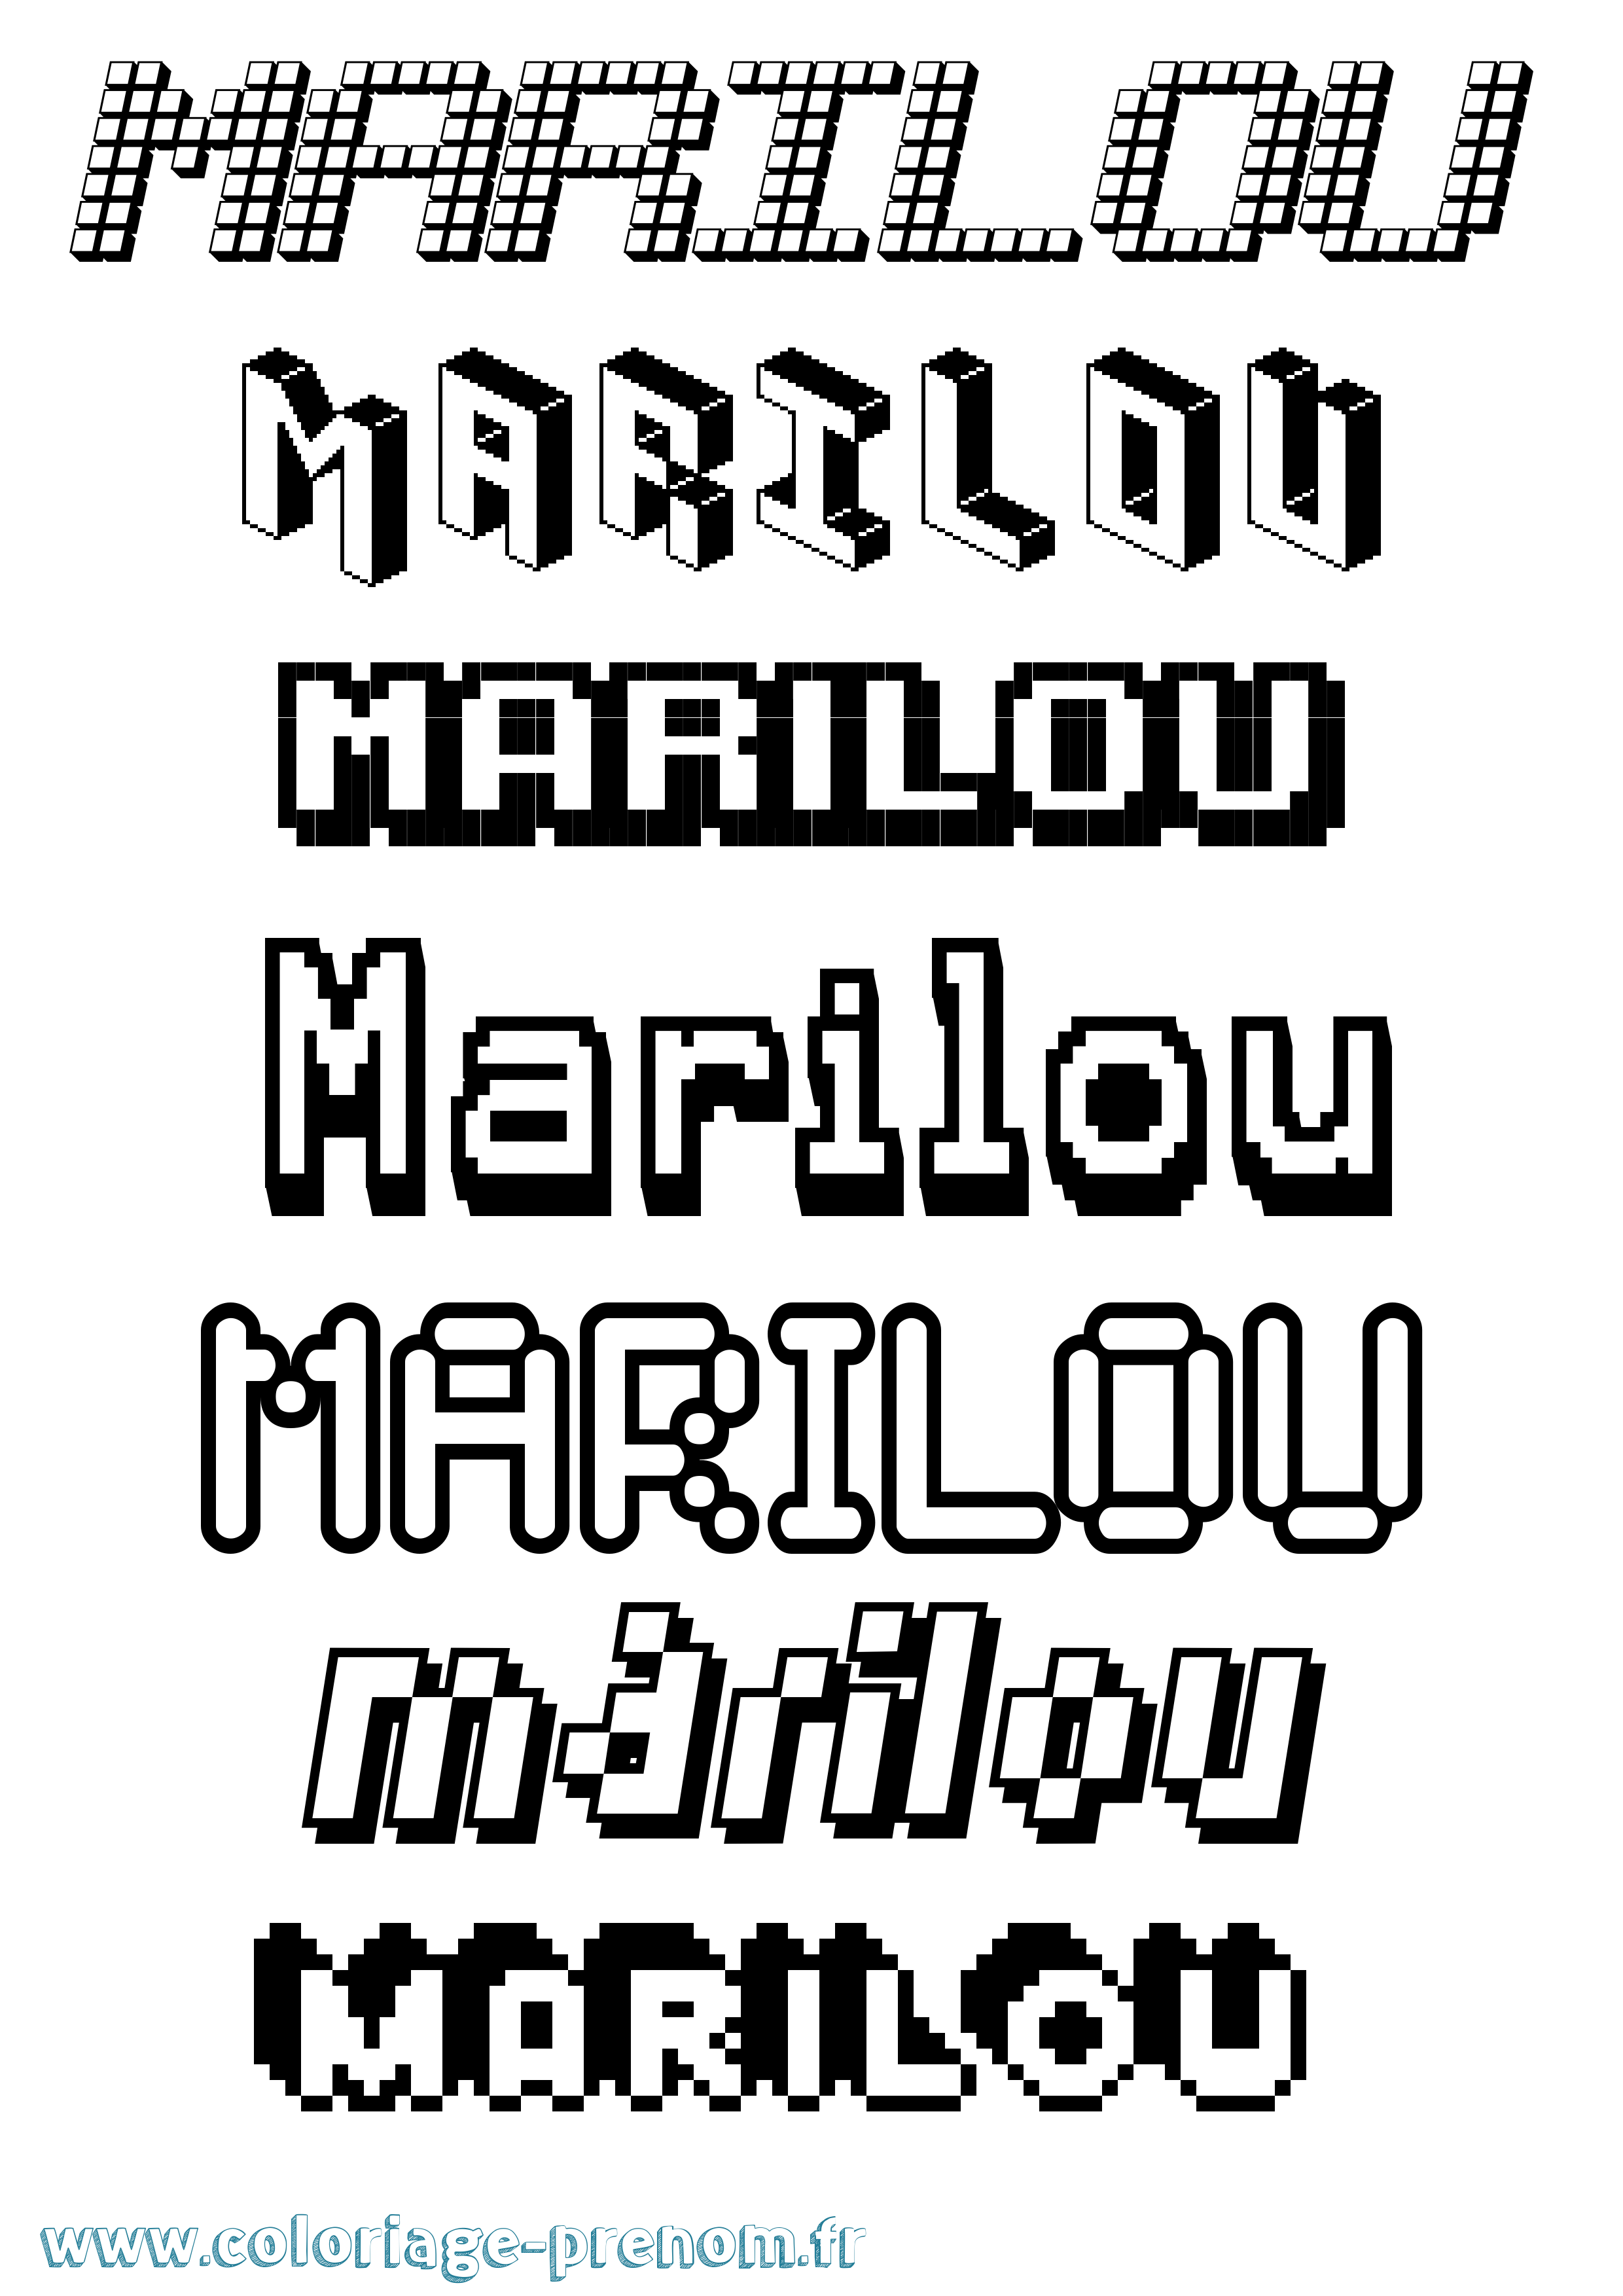 Coloriage prénom Marilou